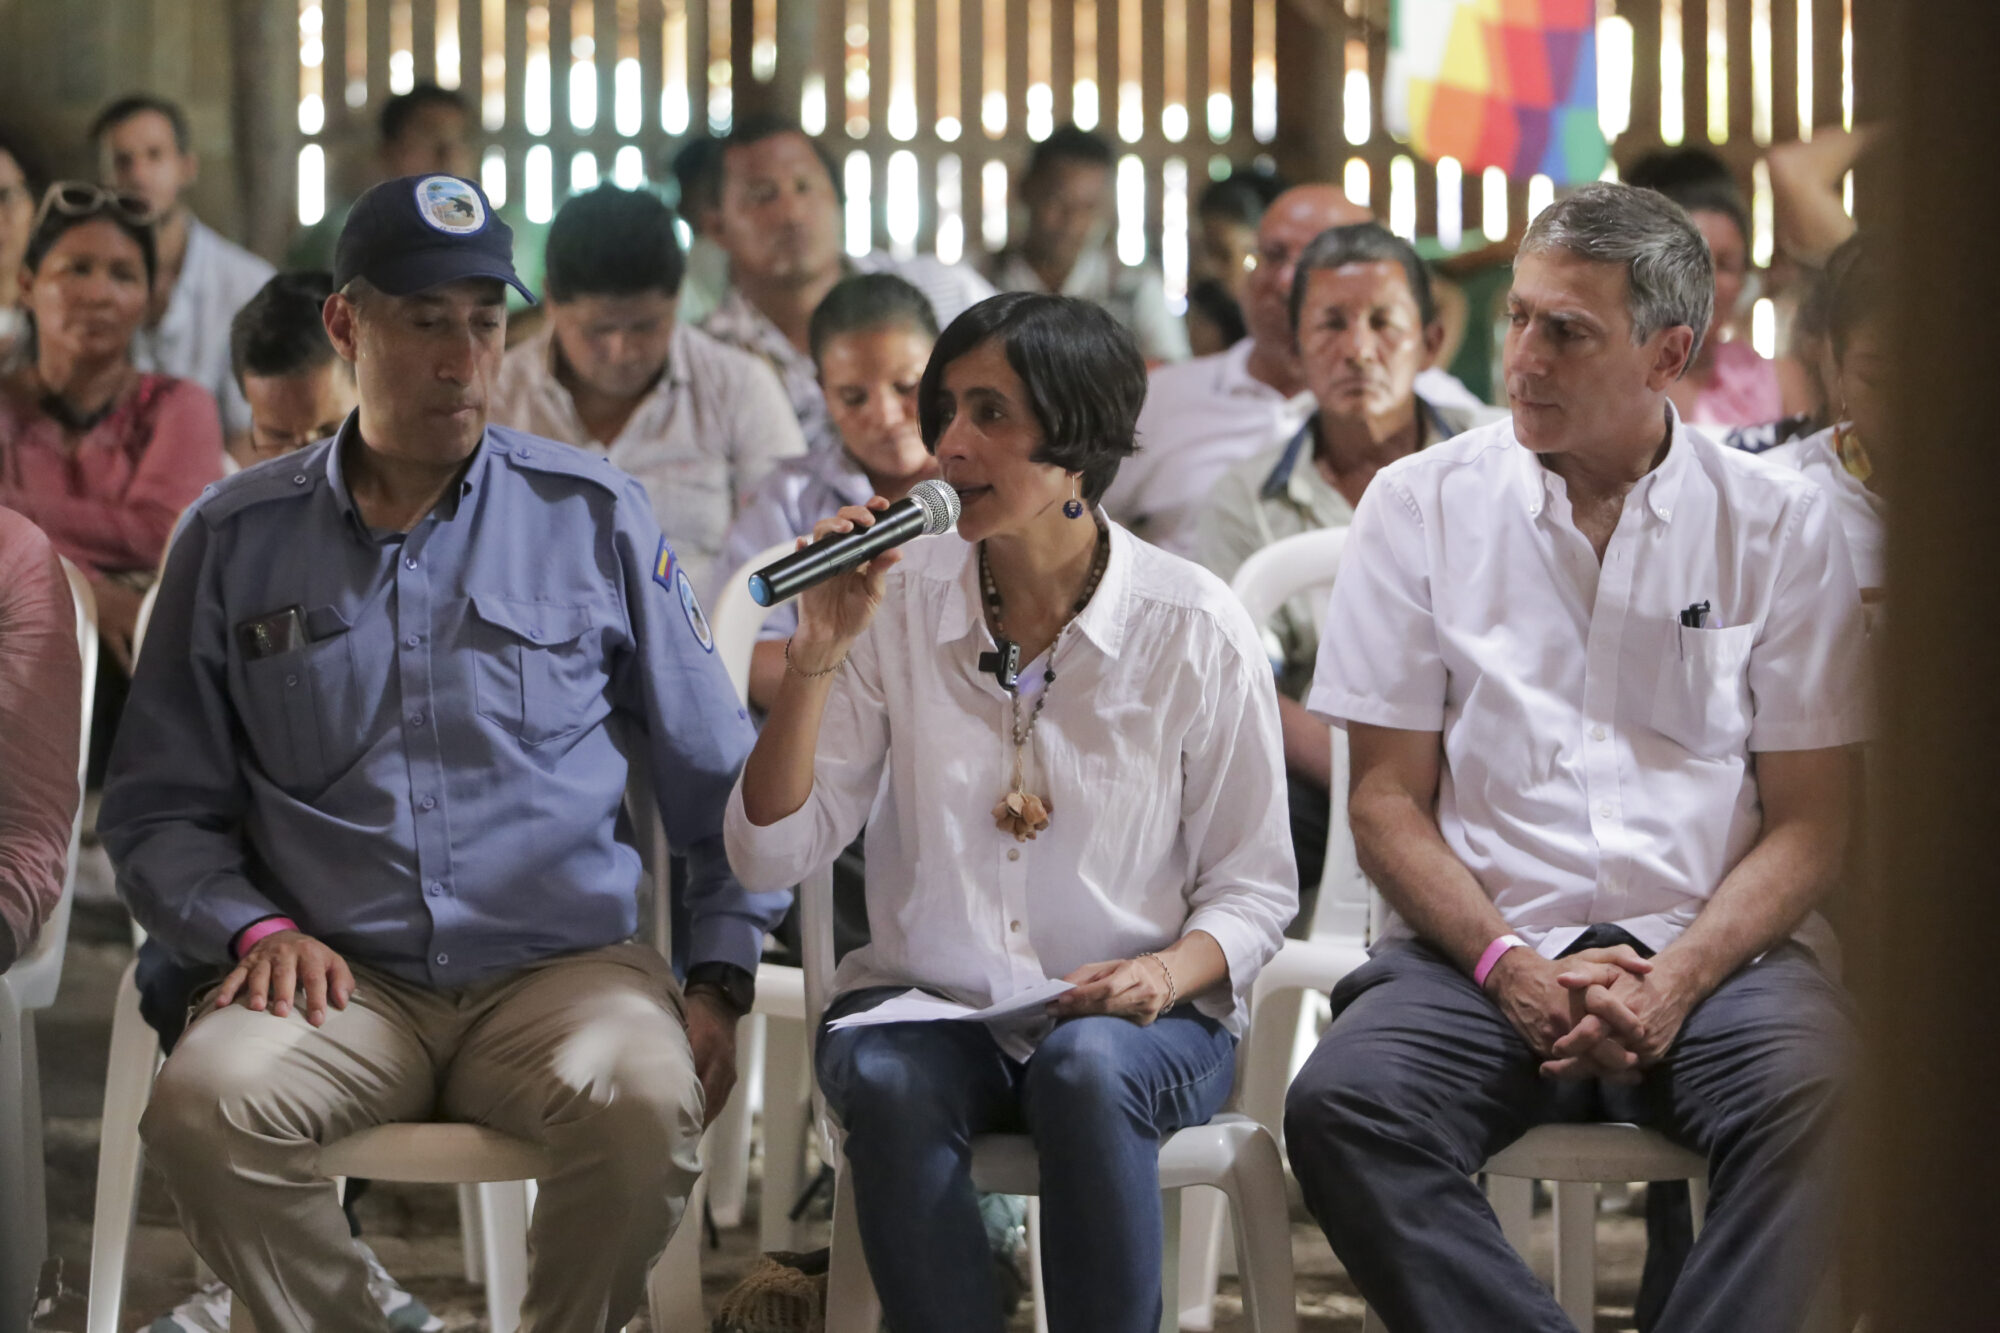 Susana Muhamad con un micrófono en su mano, sentada entre un grupo de personas